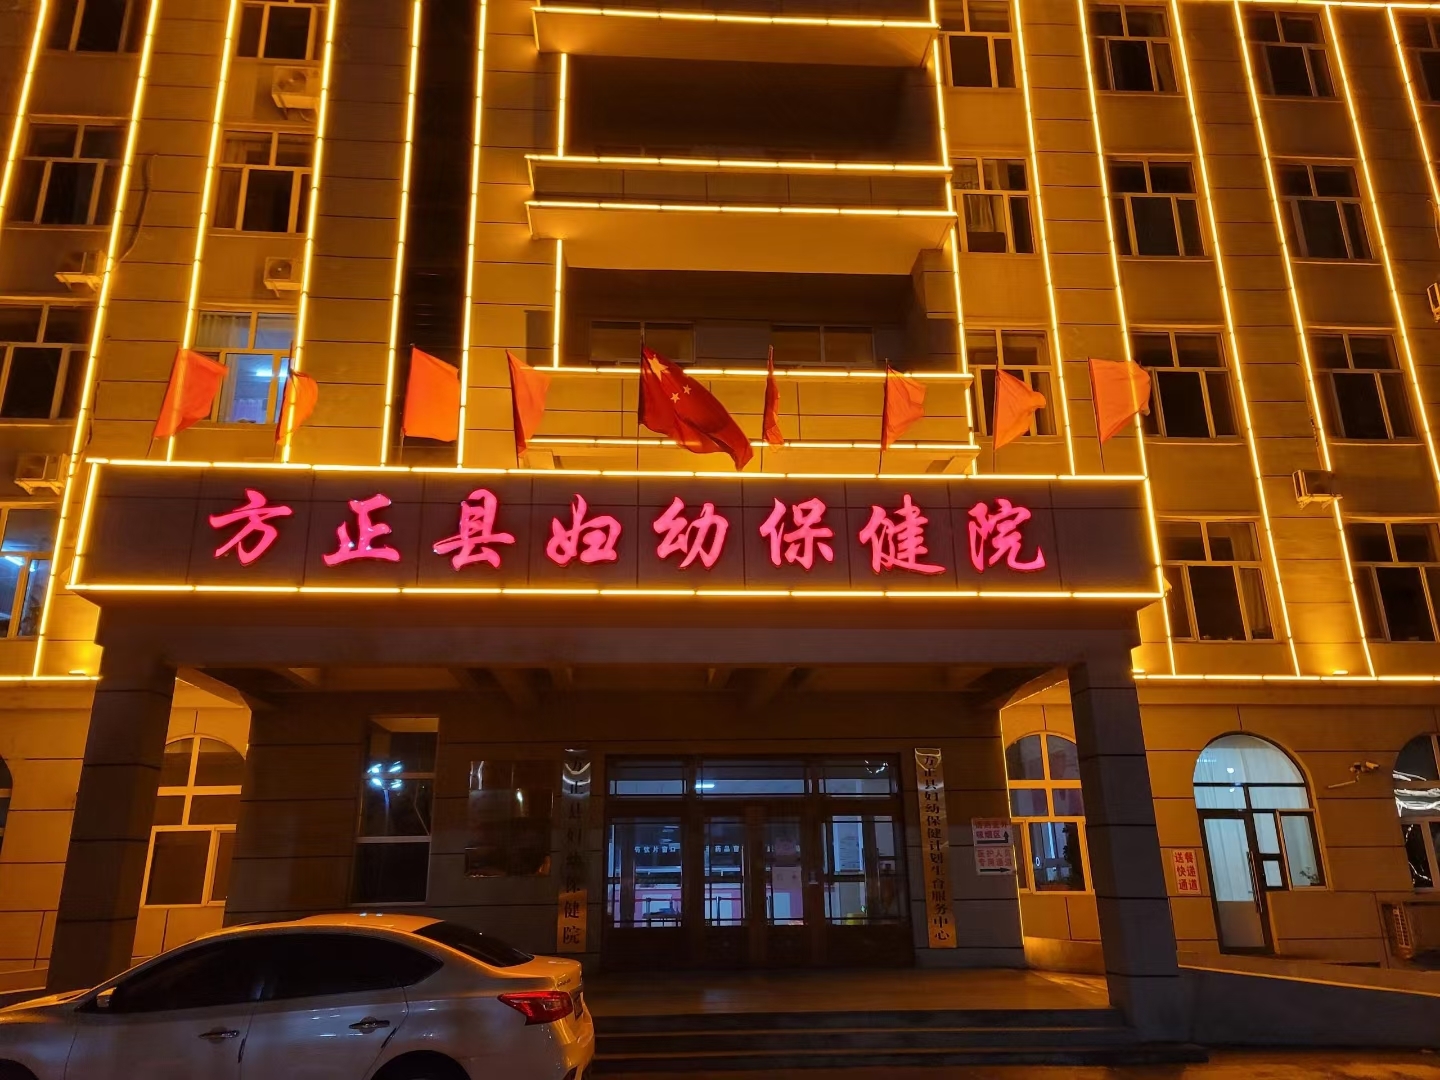 [装机]血铅检测仪品牌厂家在哈尔滨方正县妇幼保健院安装培训完成